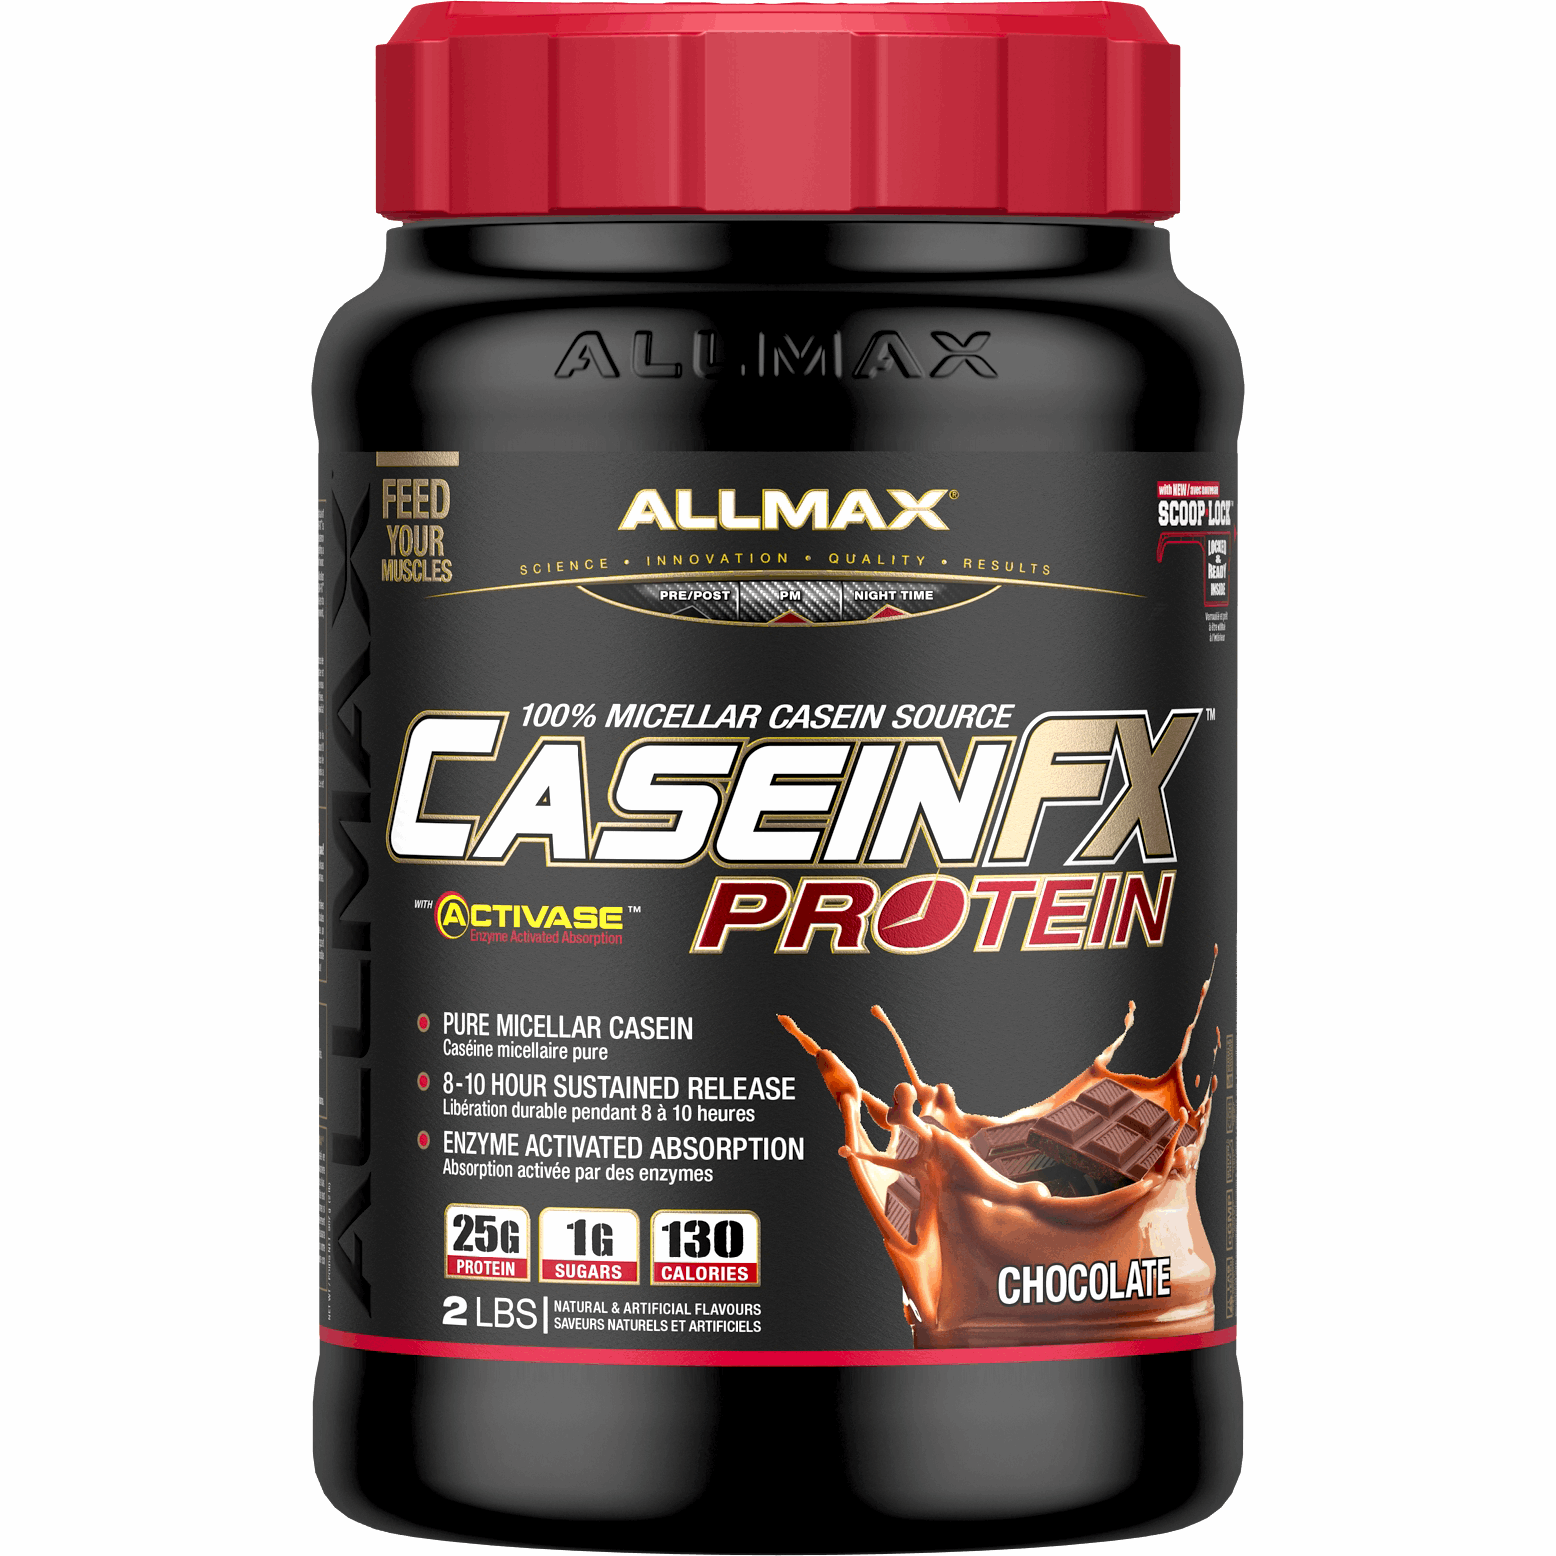 ALLMAX CaseinFX (2lbs) Casein Chocolate Allmax Nutrition allmax-caseinfx-2lbs